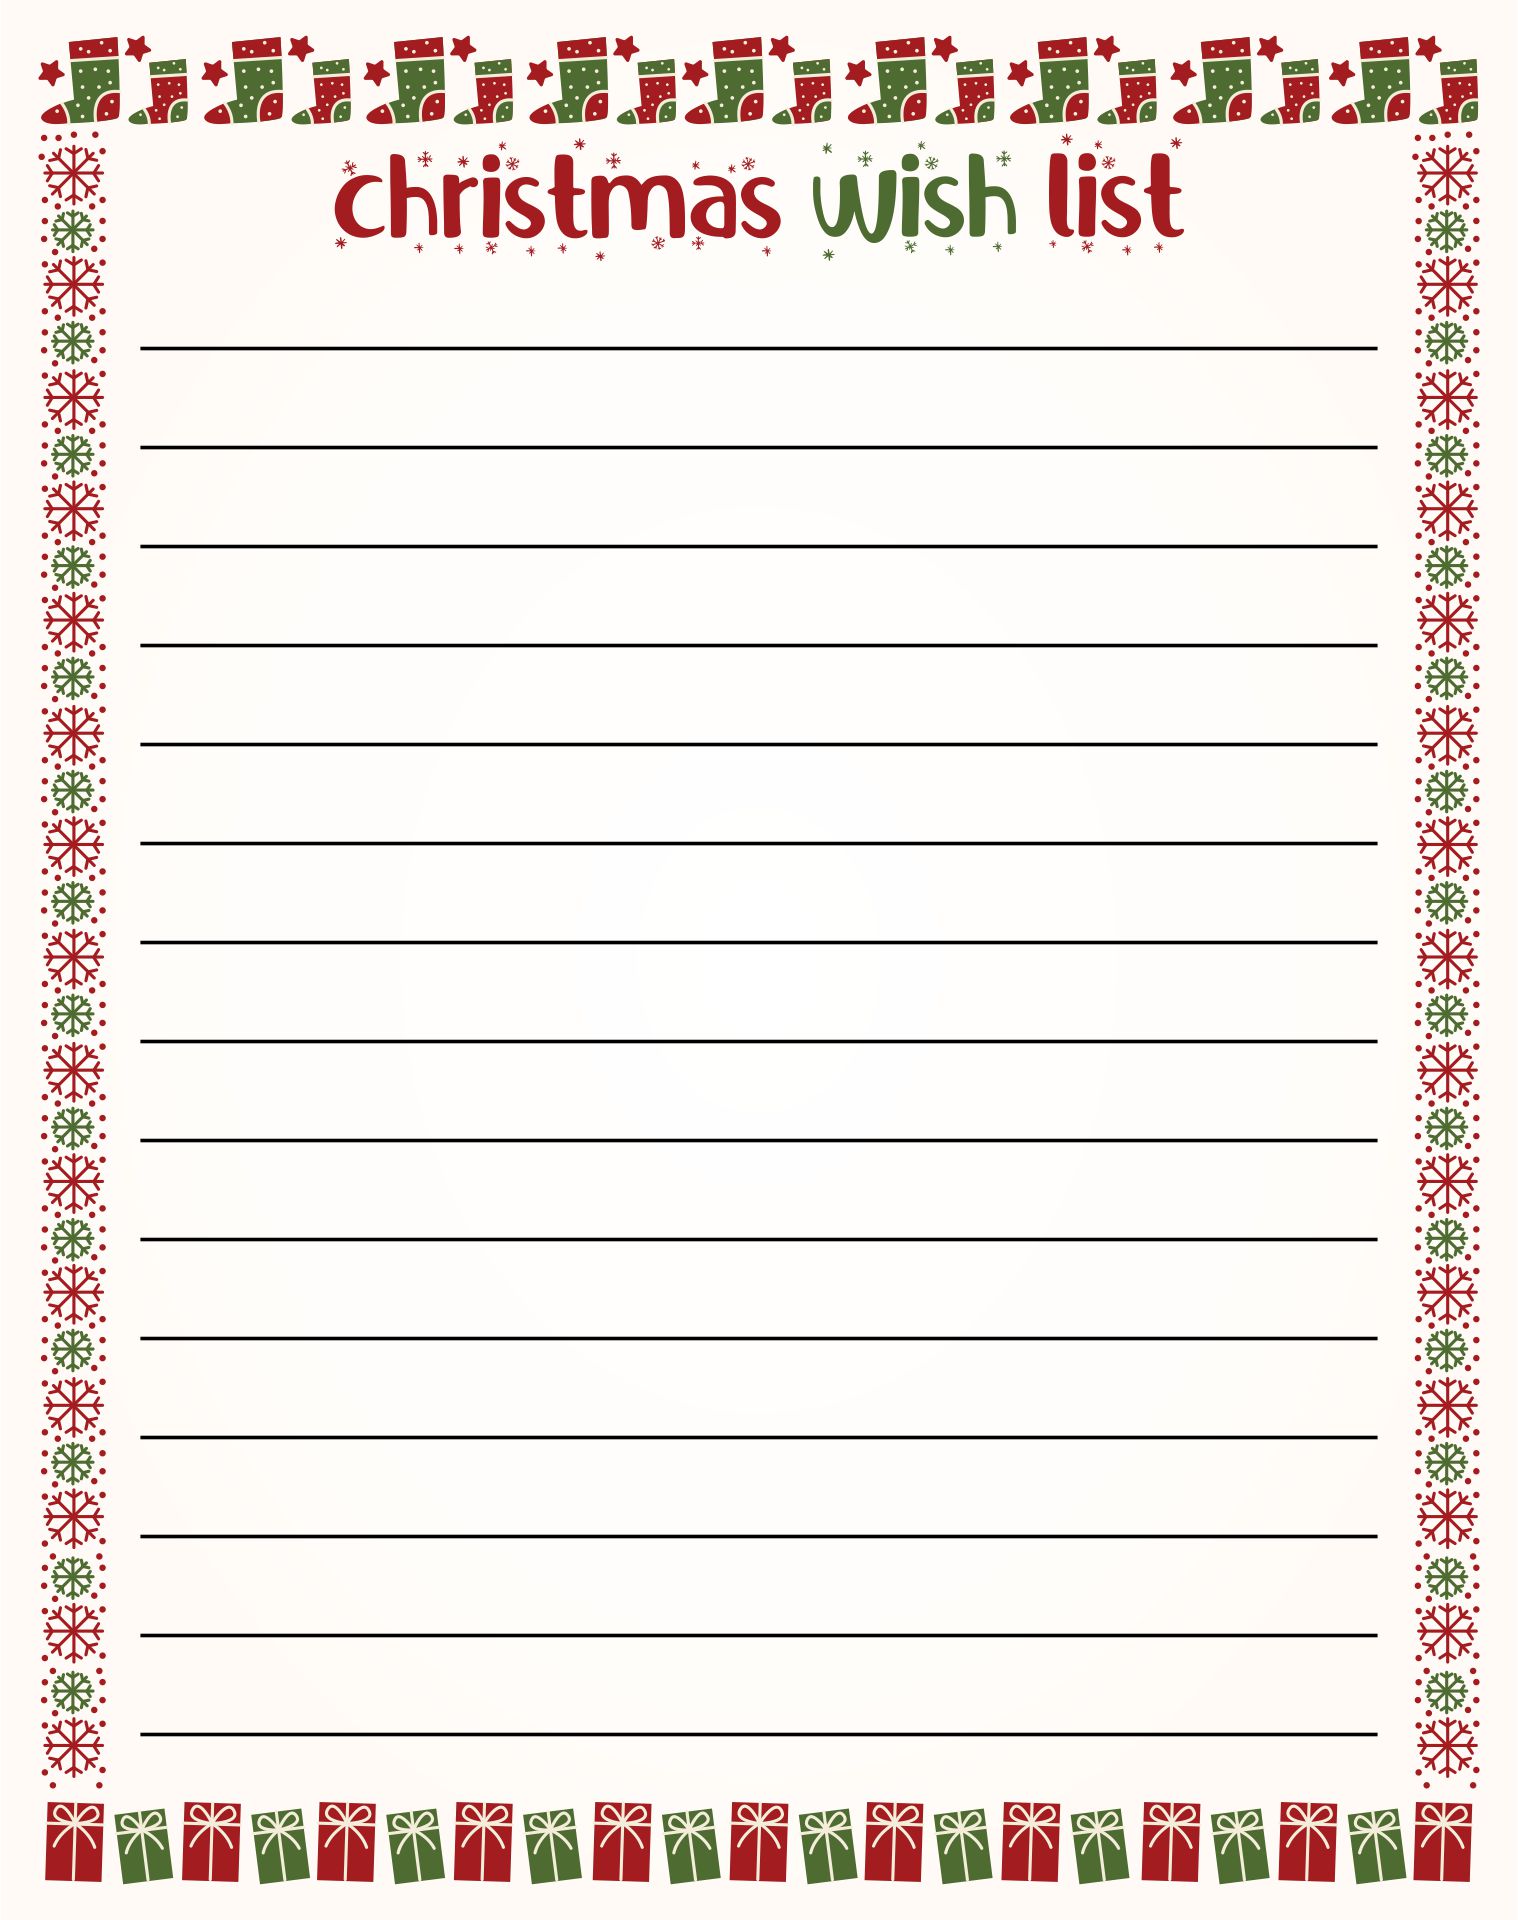  Printable Christmas Wish List Templates